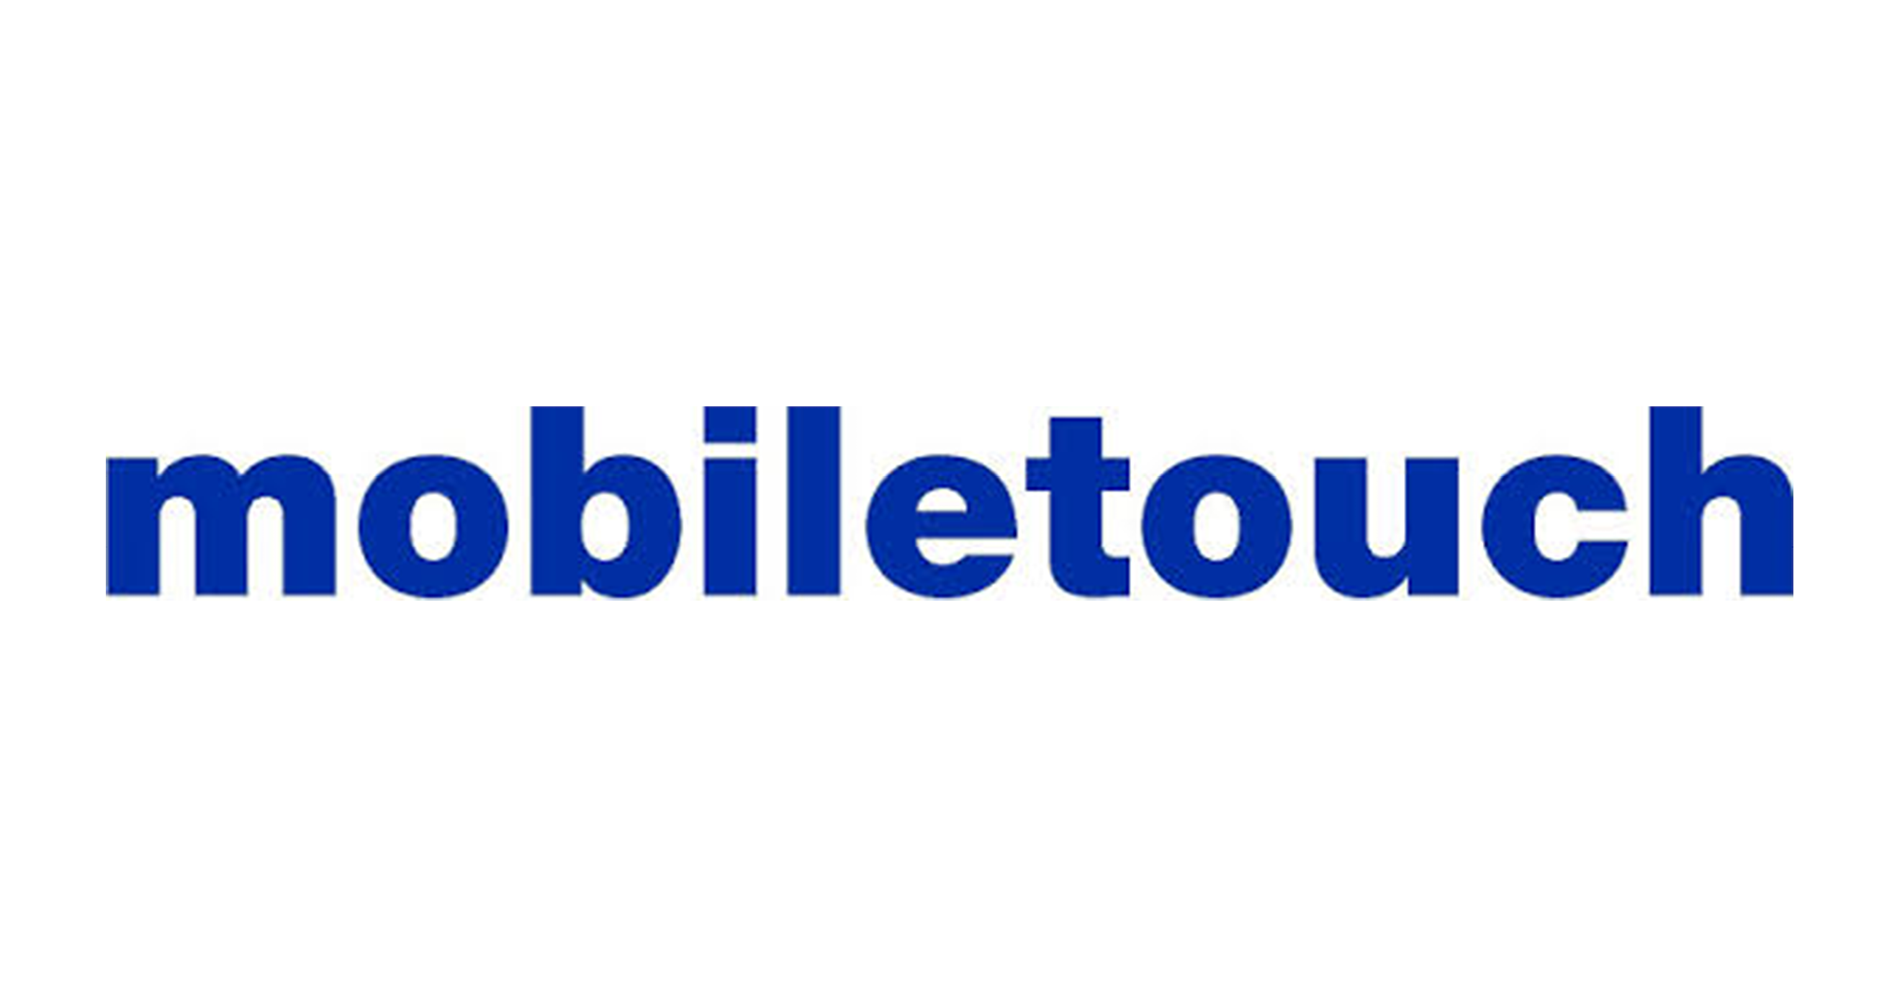 Mobiletouch logo